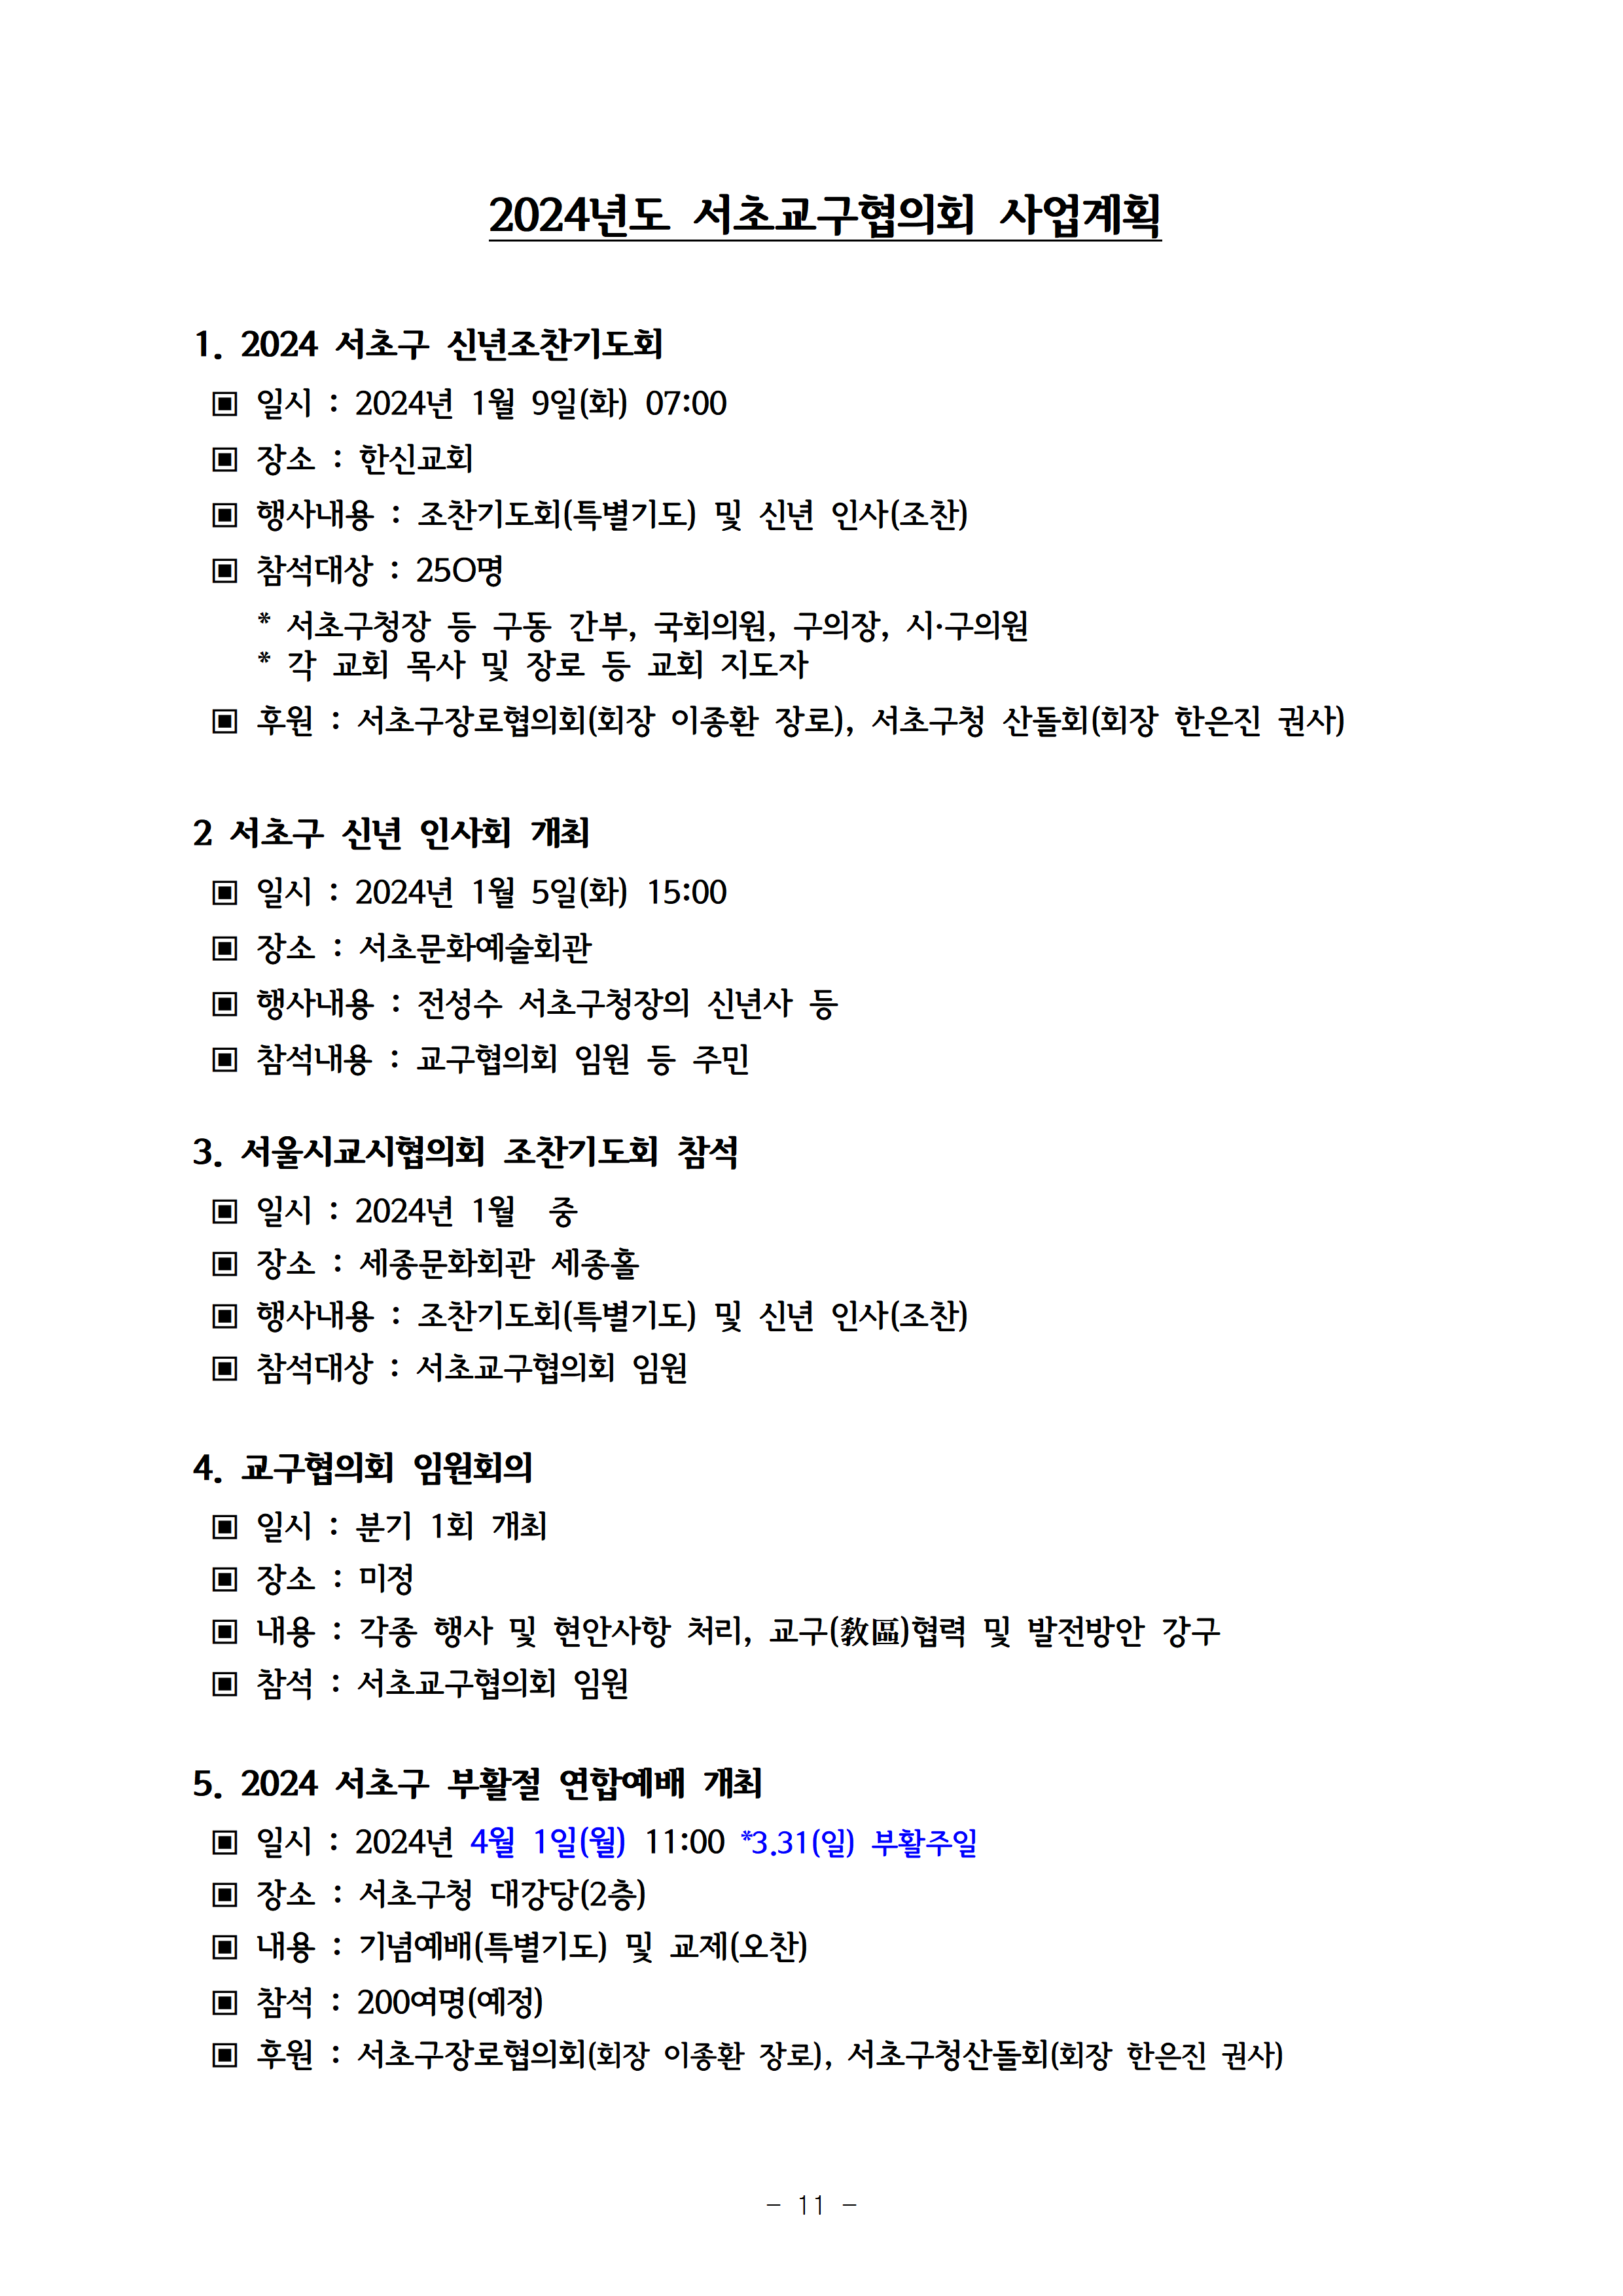 2023회기 서초교구협의회 정기총회자료(12.14.)012.png